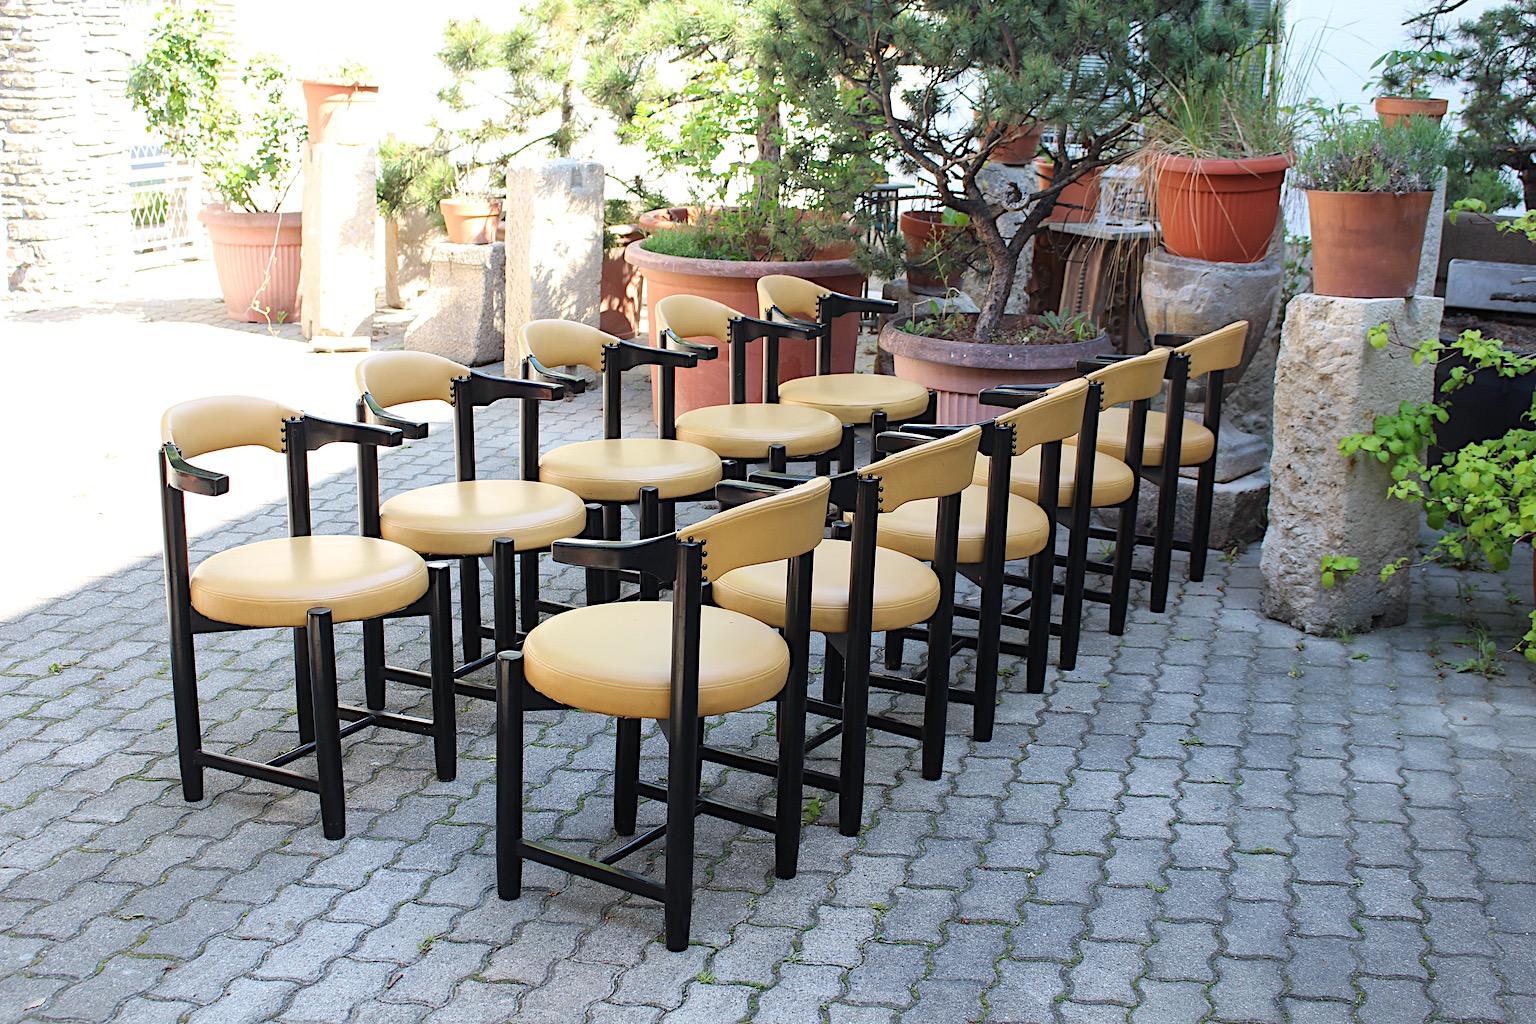 Moderne Vintage zehn Esszimmerstühle oder Sessel aus Buche und Kunstleder in schwarz und gelb Farbe Italien 1980er Jahre.
Ein schönes Set von 10 Esszimmerstühlen mit Armlehnen eine einfache und mutige Farbkombination von schwarz und senfgelb aus